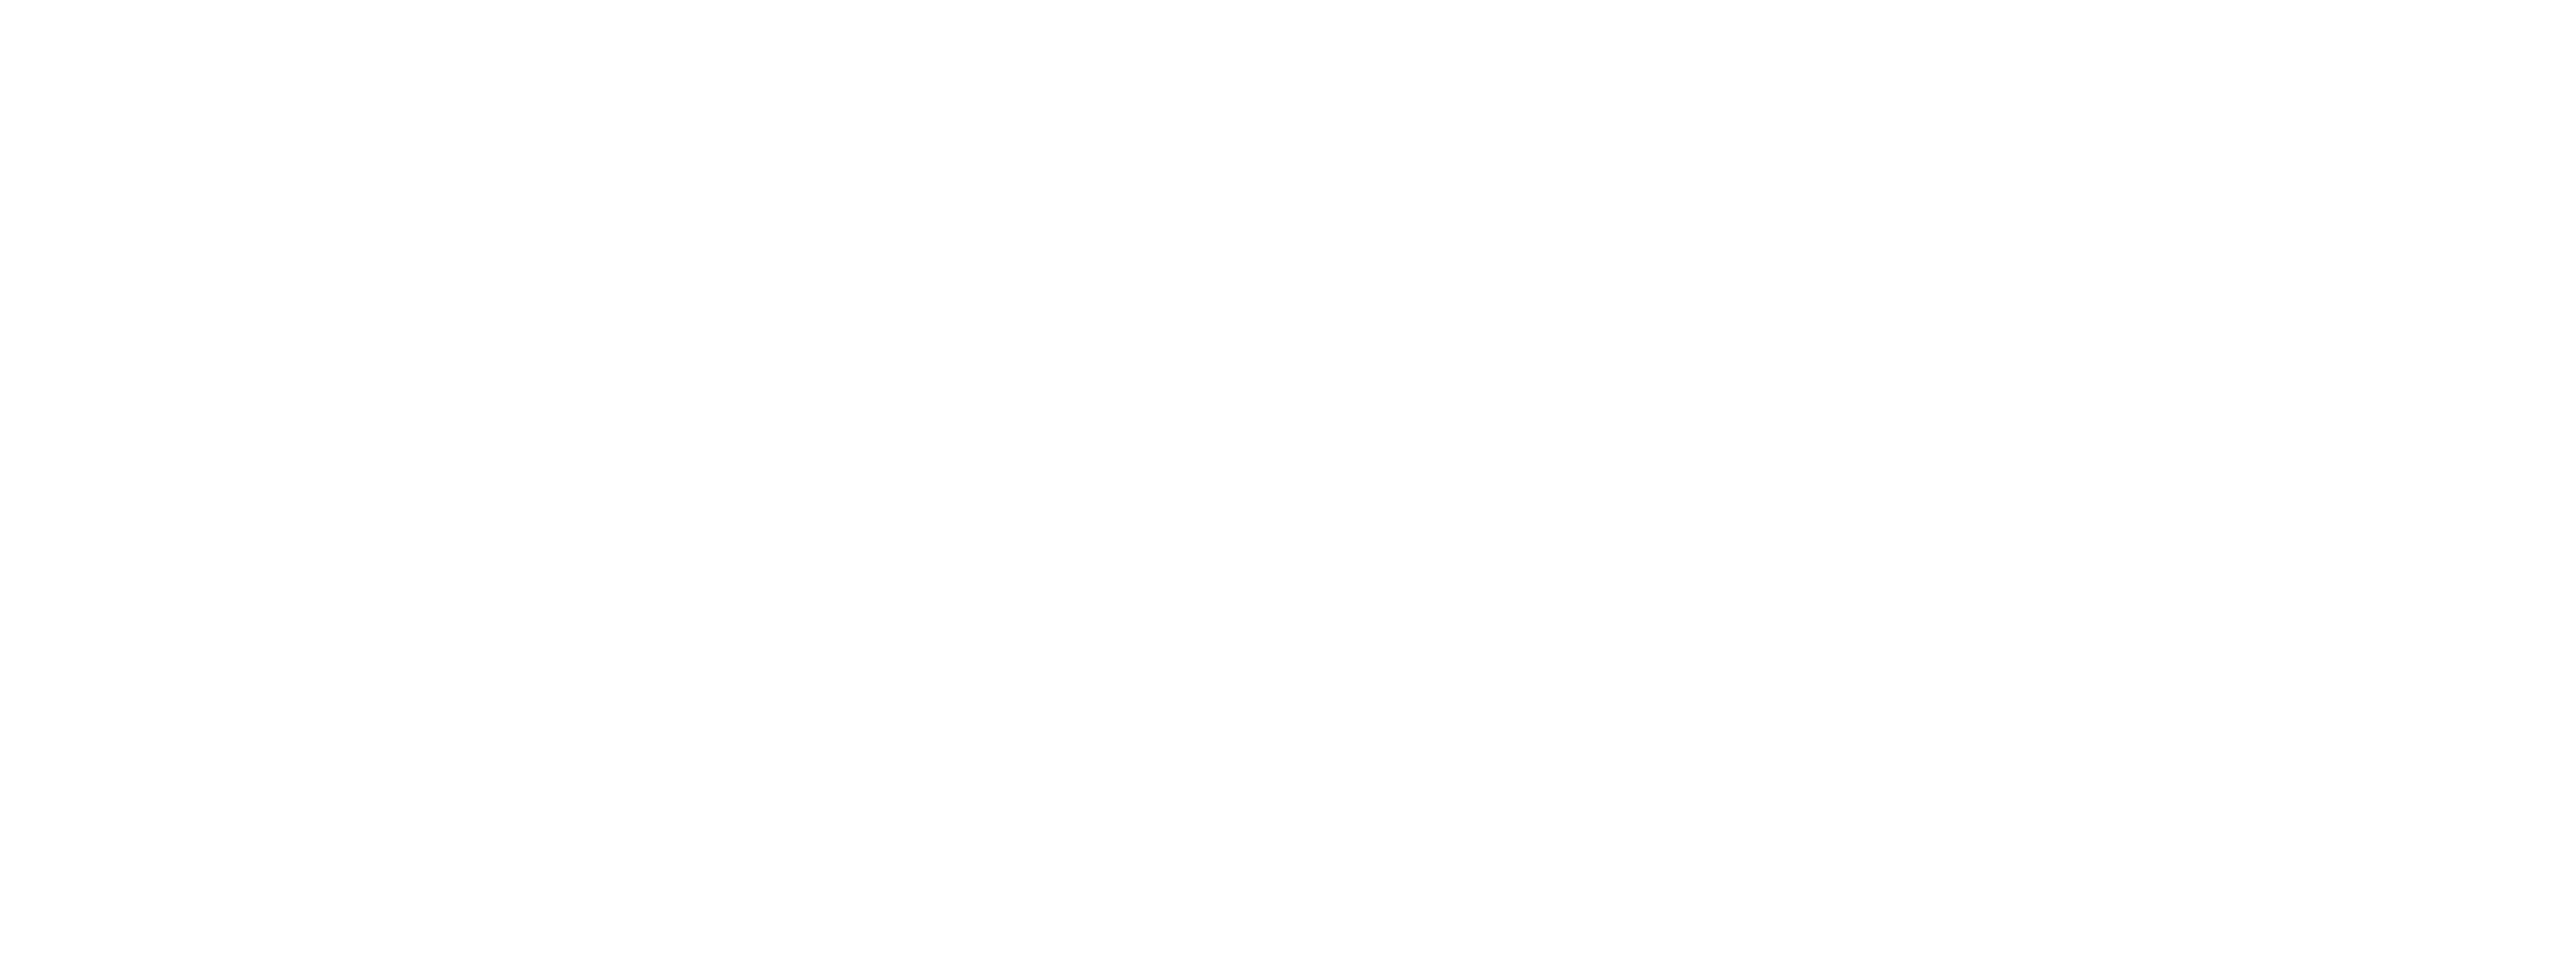 Mesh Logo for Dark Mode